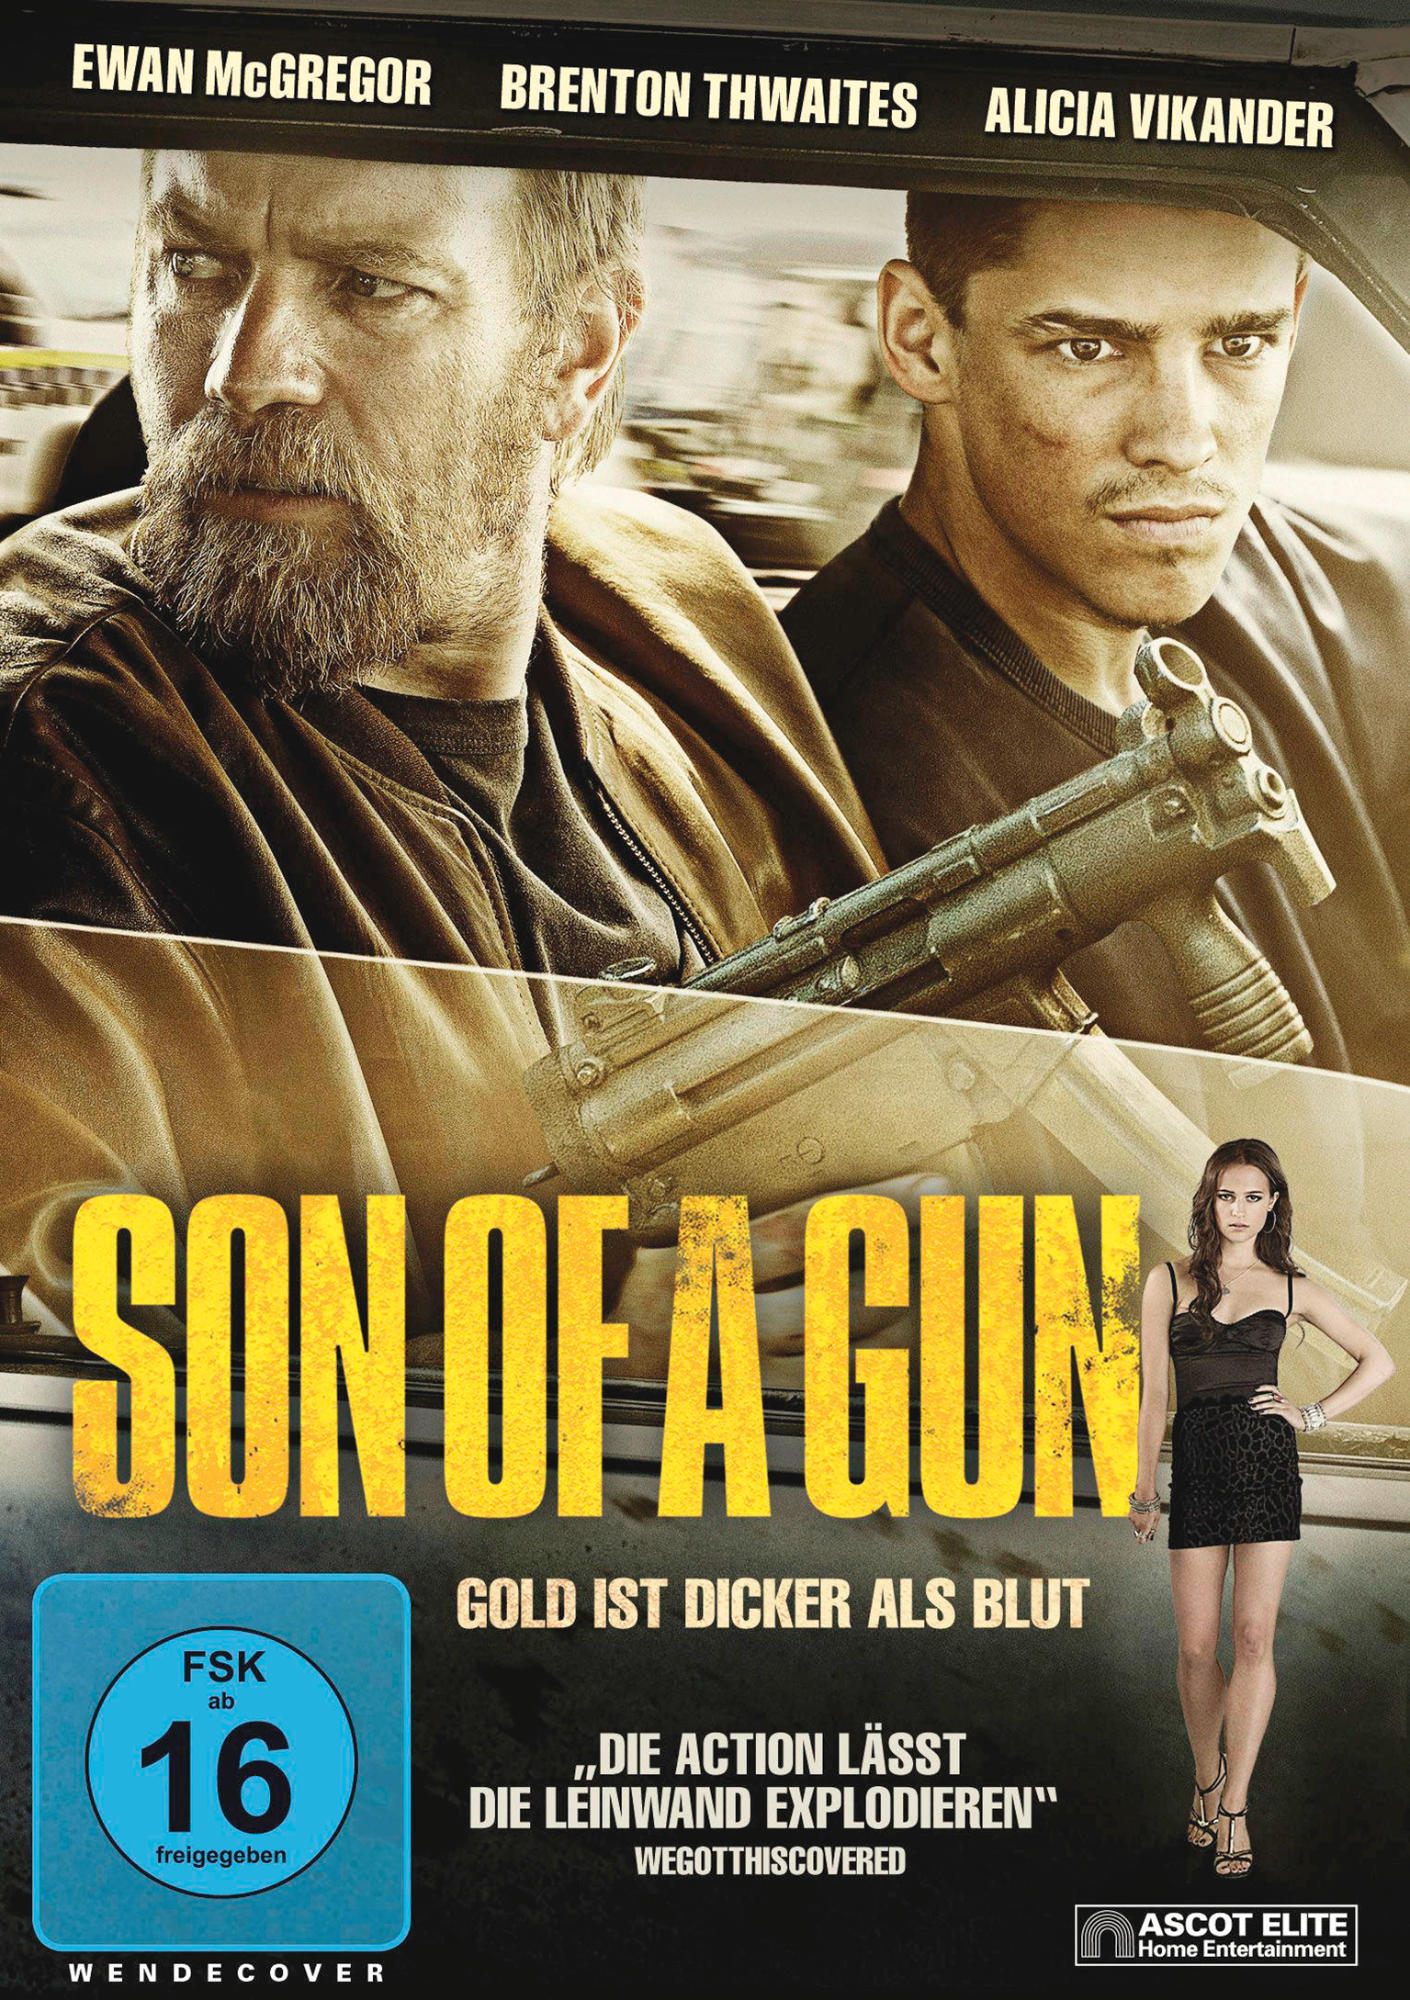 a DVD Son of Gun